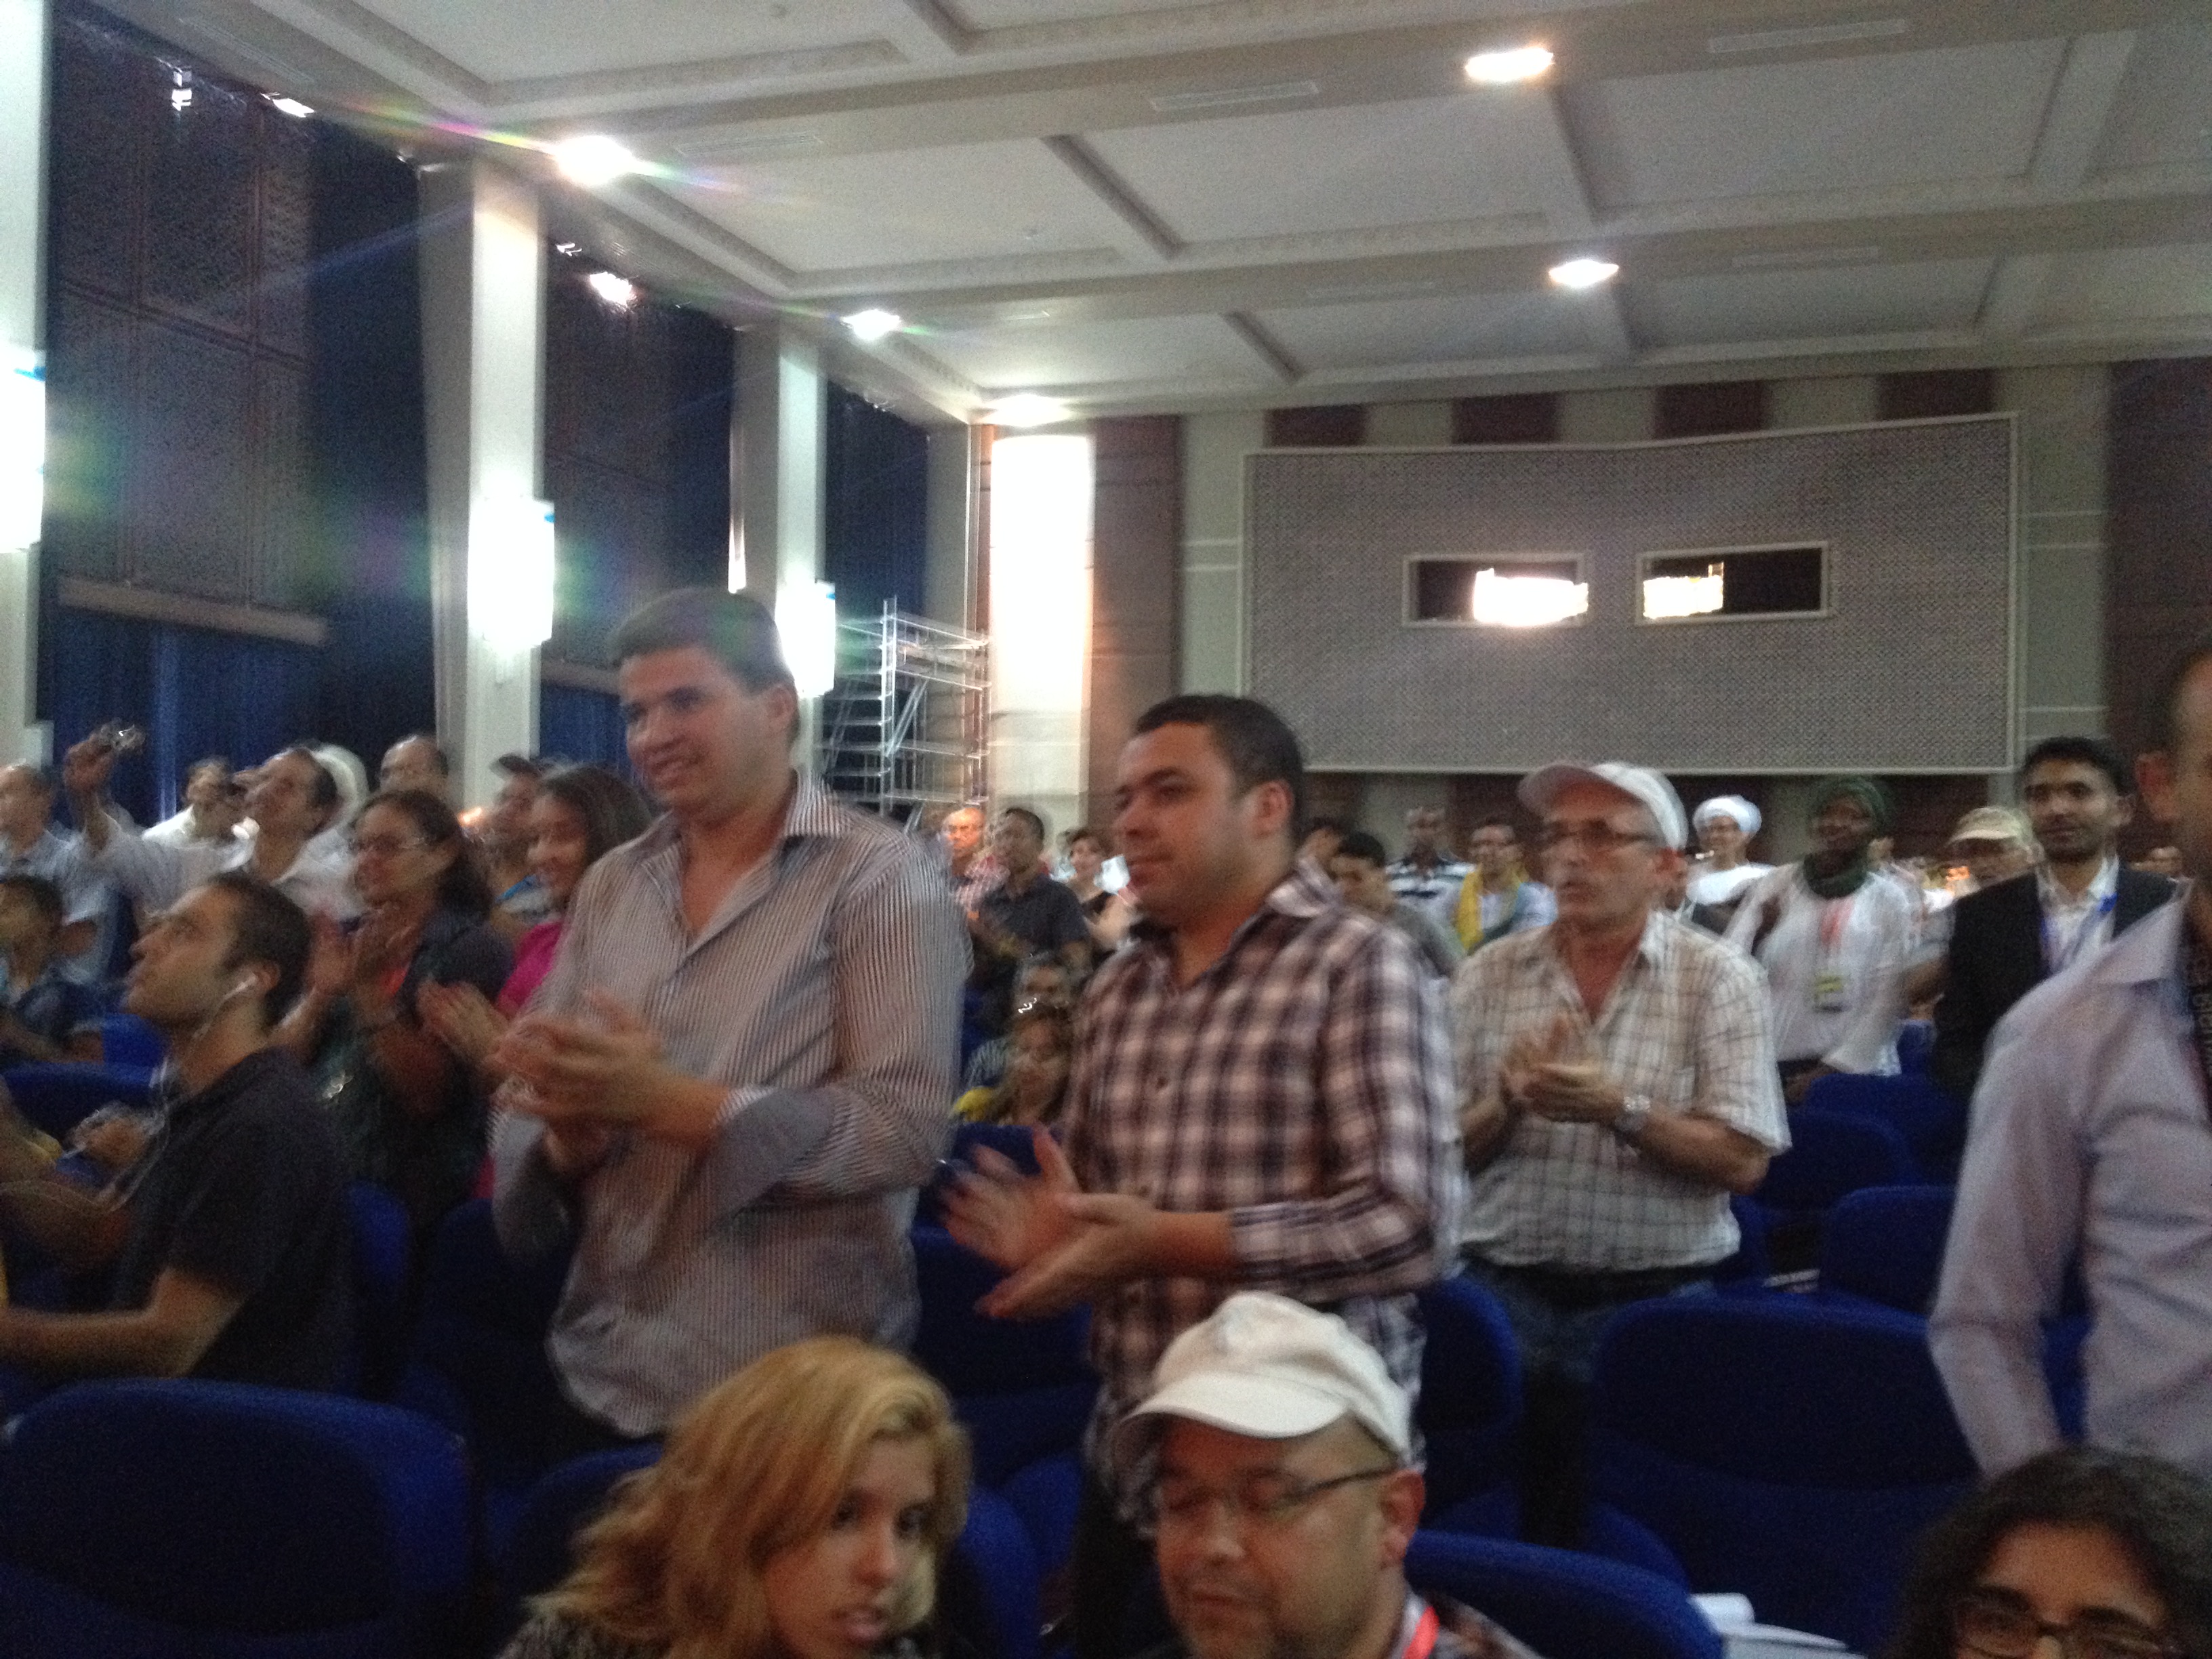 Les participants au 7è Congrès mondial amazigh se lèvent pour applaudire le président de l'Anavad Ferhat Mehenni